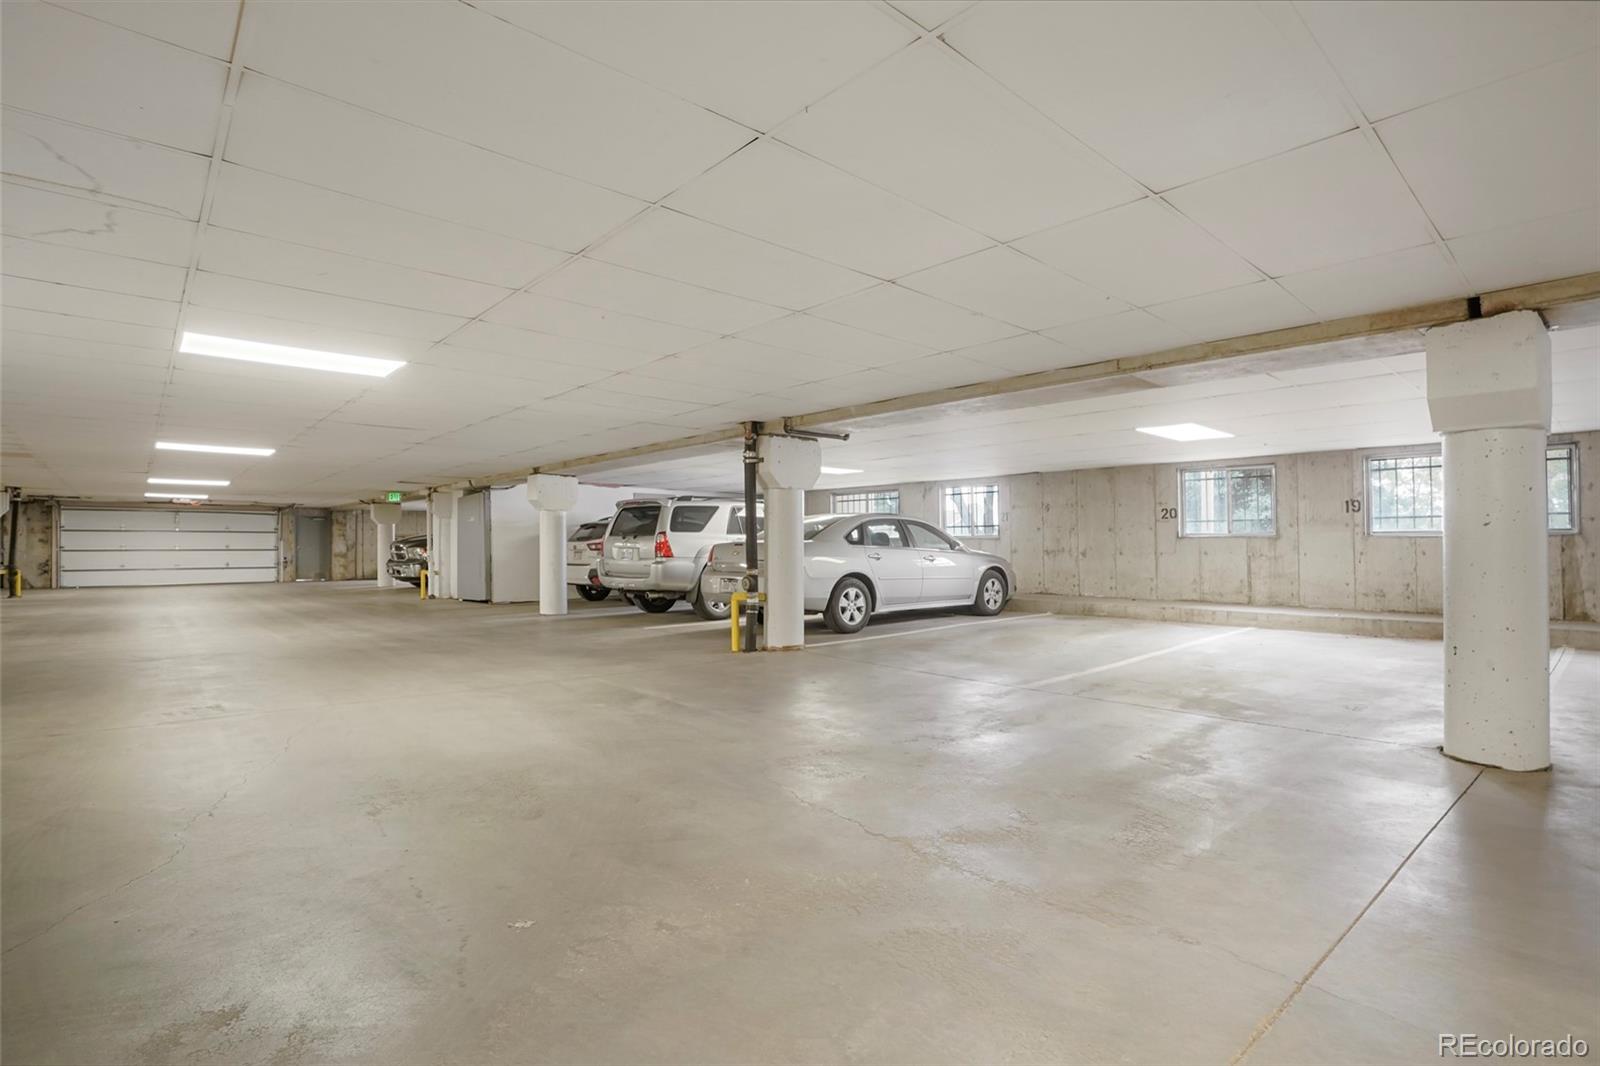 Underground Garage Parking Space #20